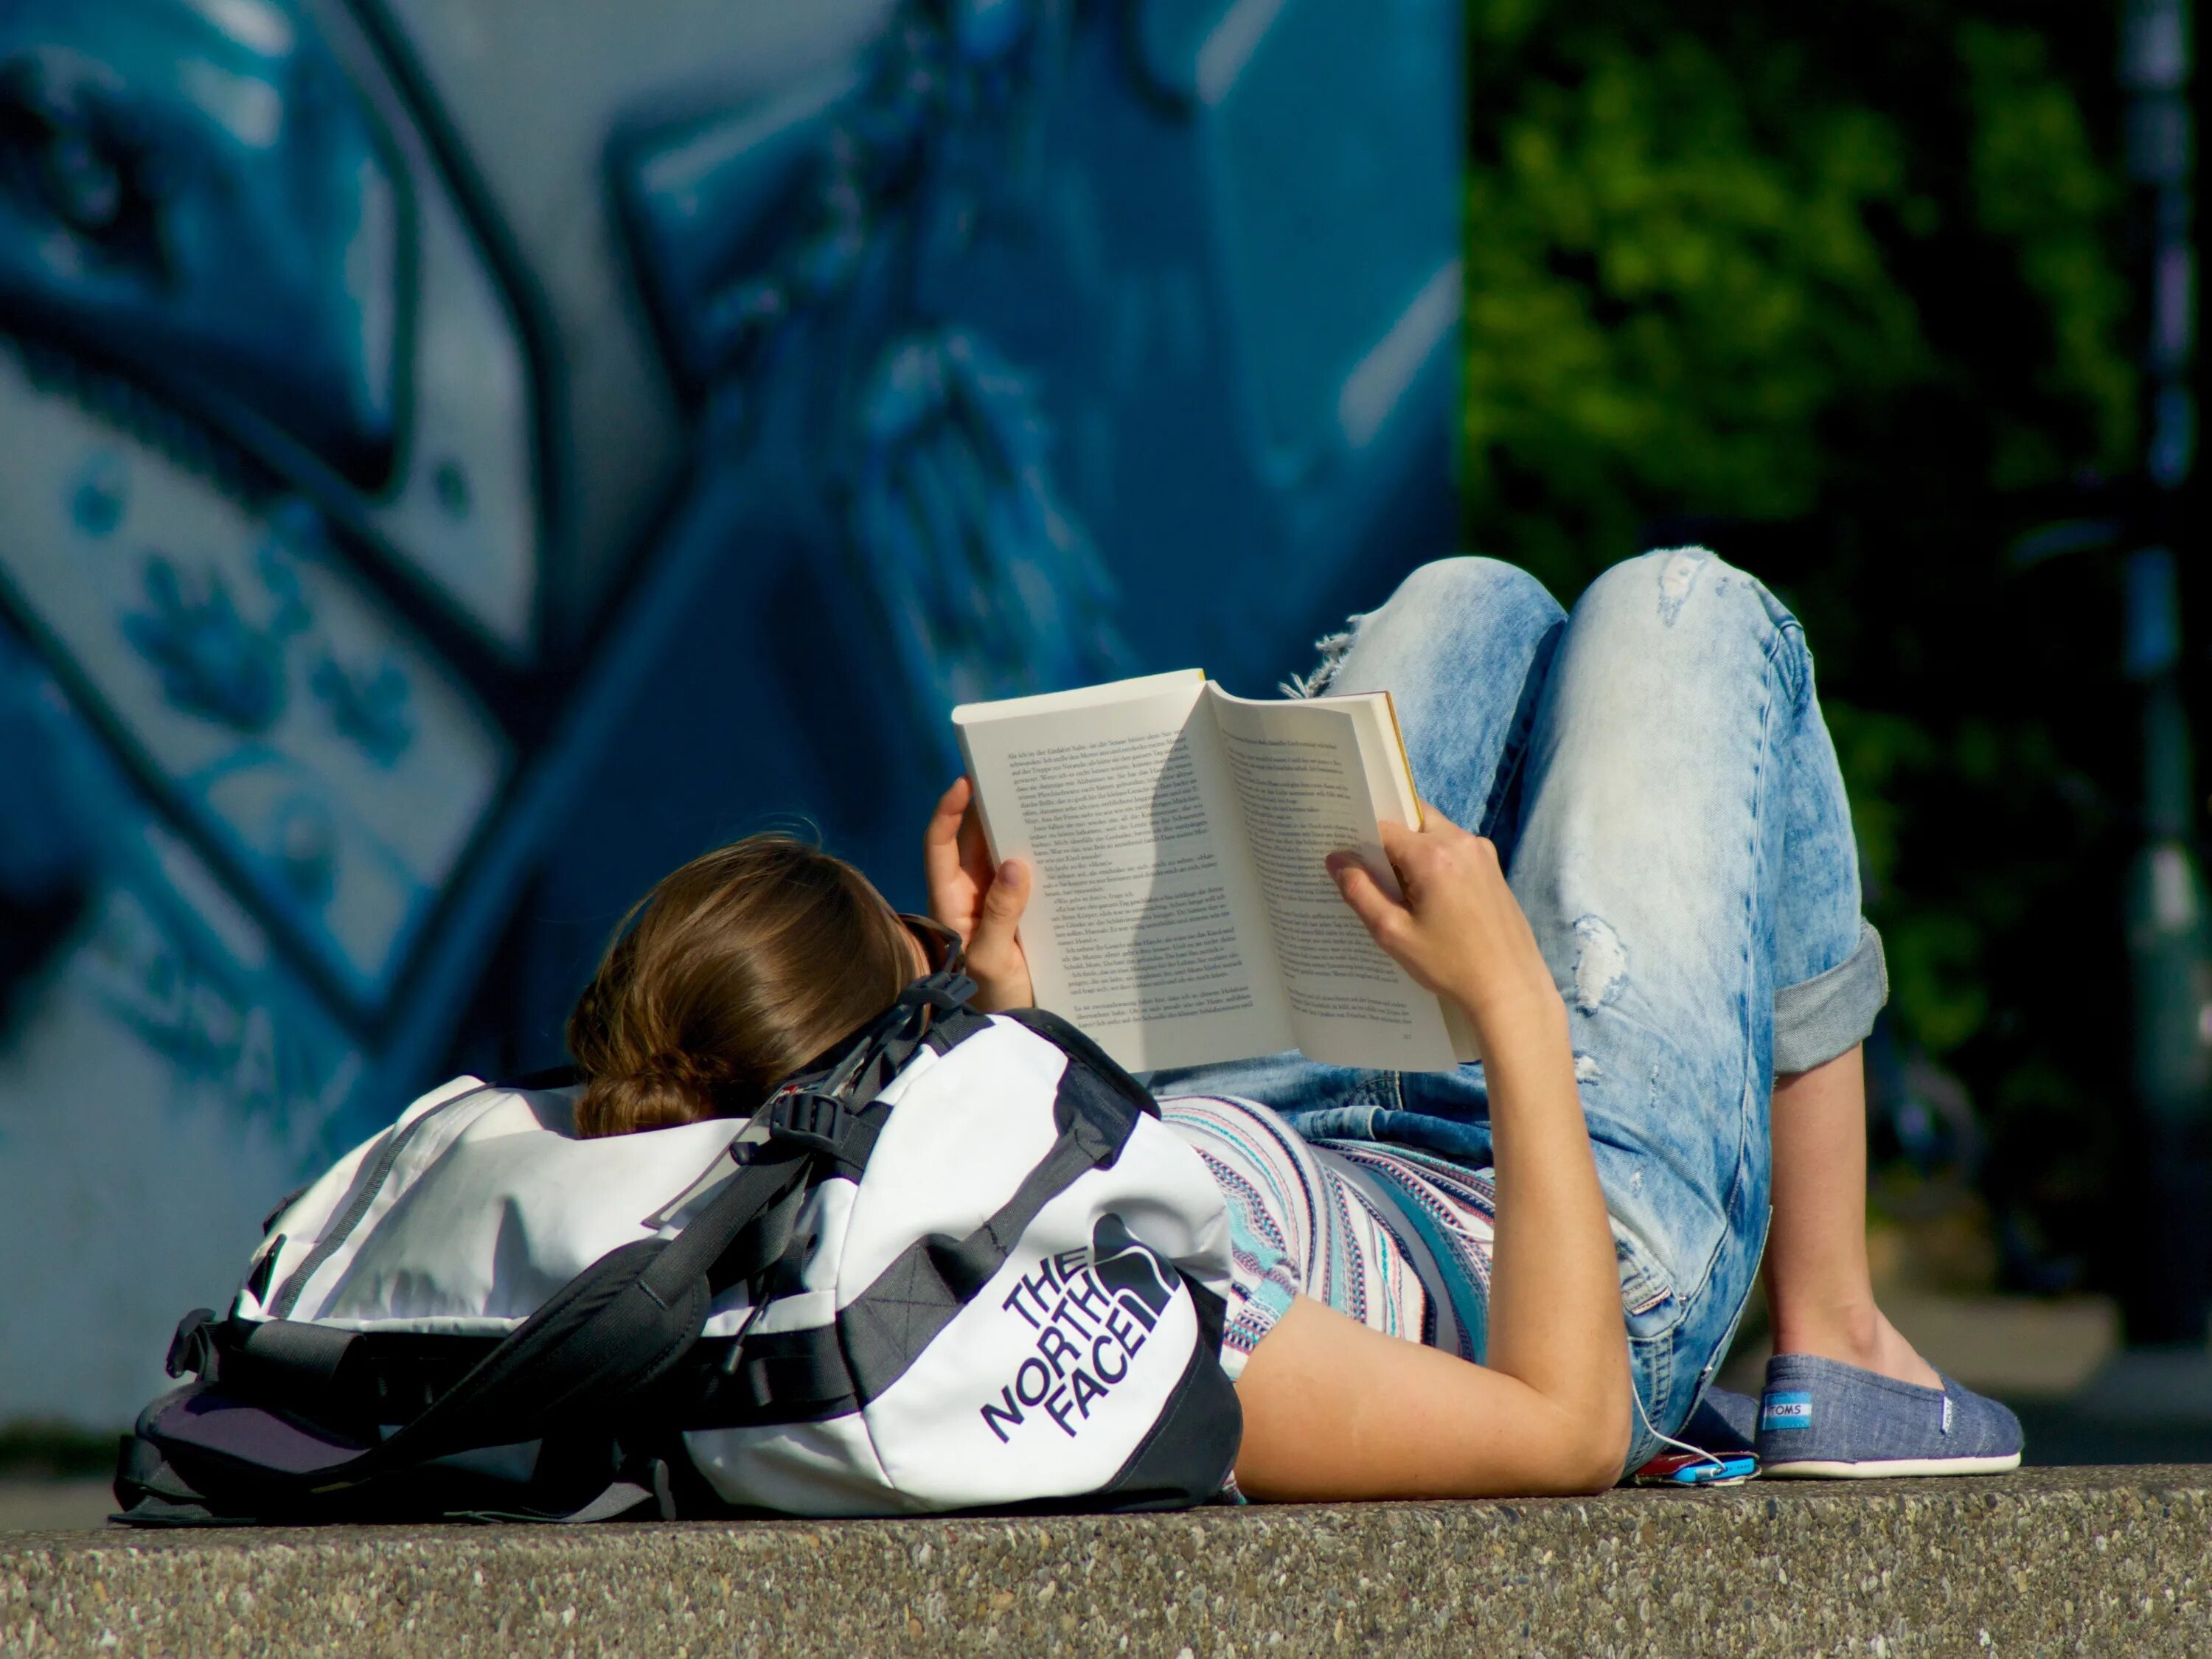 Читать лежа вредно лежа на горячем песке. Чтение лежа. Чтение подростки. Девушка с книжкой. Чтение в необычных местах.